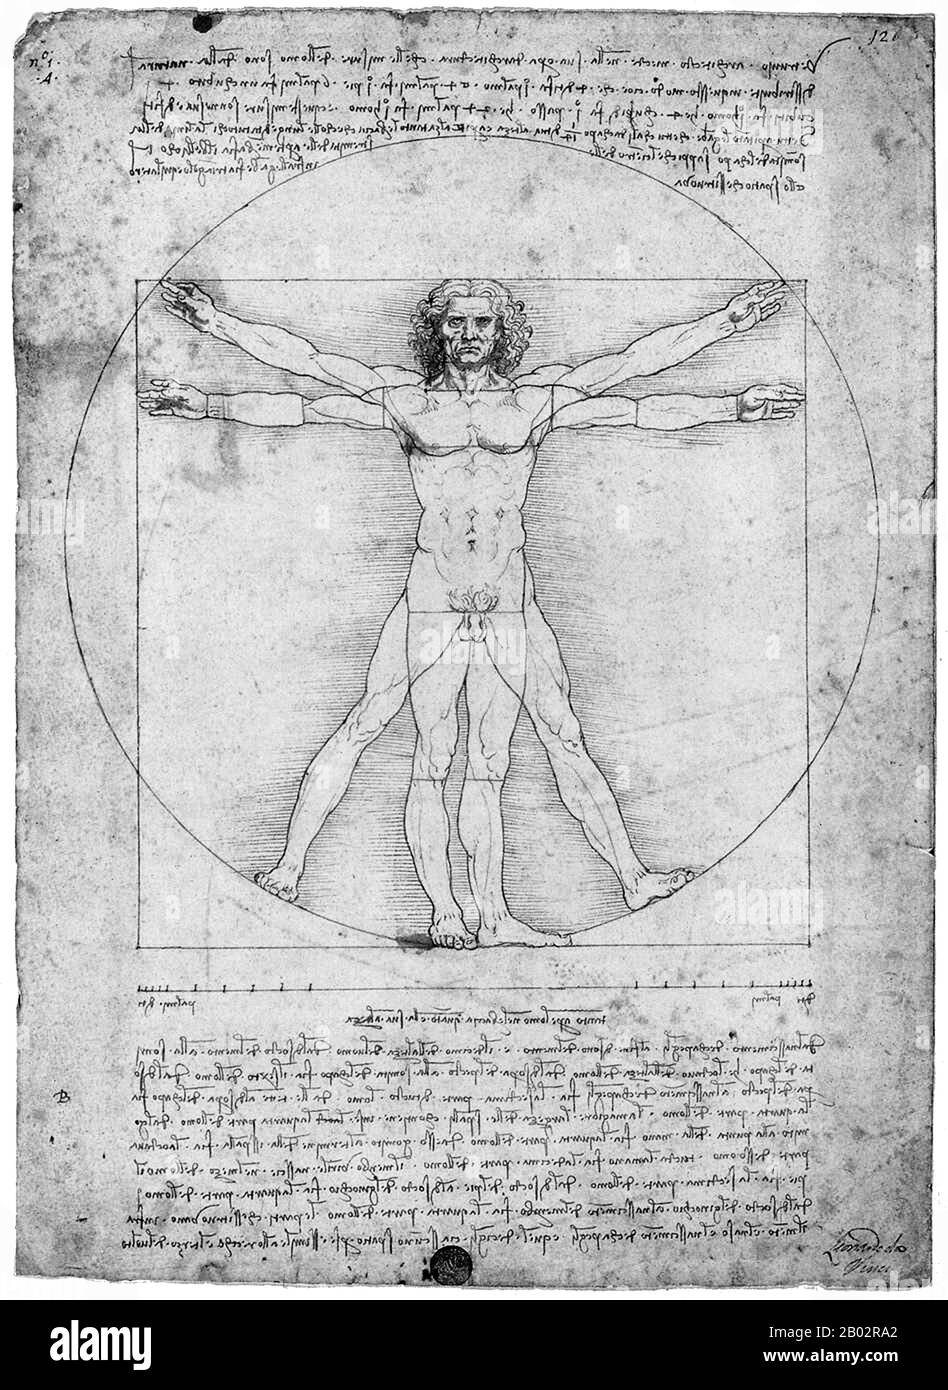 Leonardo di ser Piero da Vinci (15. April 1452 - 2. Mai 1519) war ein italienischer Universalgelehrter, Maler, Bildhauer, Architekt, Musiker, Musiker, Mathematik, Ingenieur, Erfinder, Anatom, Geologe, Kartograf, Botaniker und Schriftsteller. Er gilt weithin als einer der größten Maler aller Zeiten und vielleicht der diversiellste talentierte Mensch, der jemals gelebt hat. Der Vitruvianer Mensch ist eine Zeichnung von Leonardo da Vinci um 1490. Sie wird von Notizen begleitet, die auf der Arbeit des Architekten Vitruvius basieren. Die Zeichnung, die sich in Stift und Tinte auf Papier befindet, zeigt einen Mann in zwei überlagerten Positionen mit seinen Armen Stockfoto